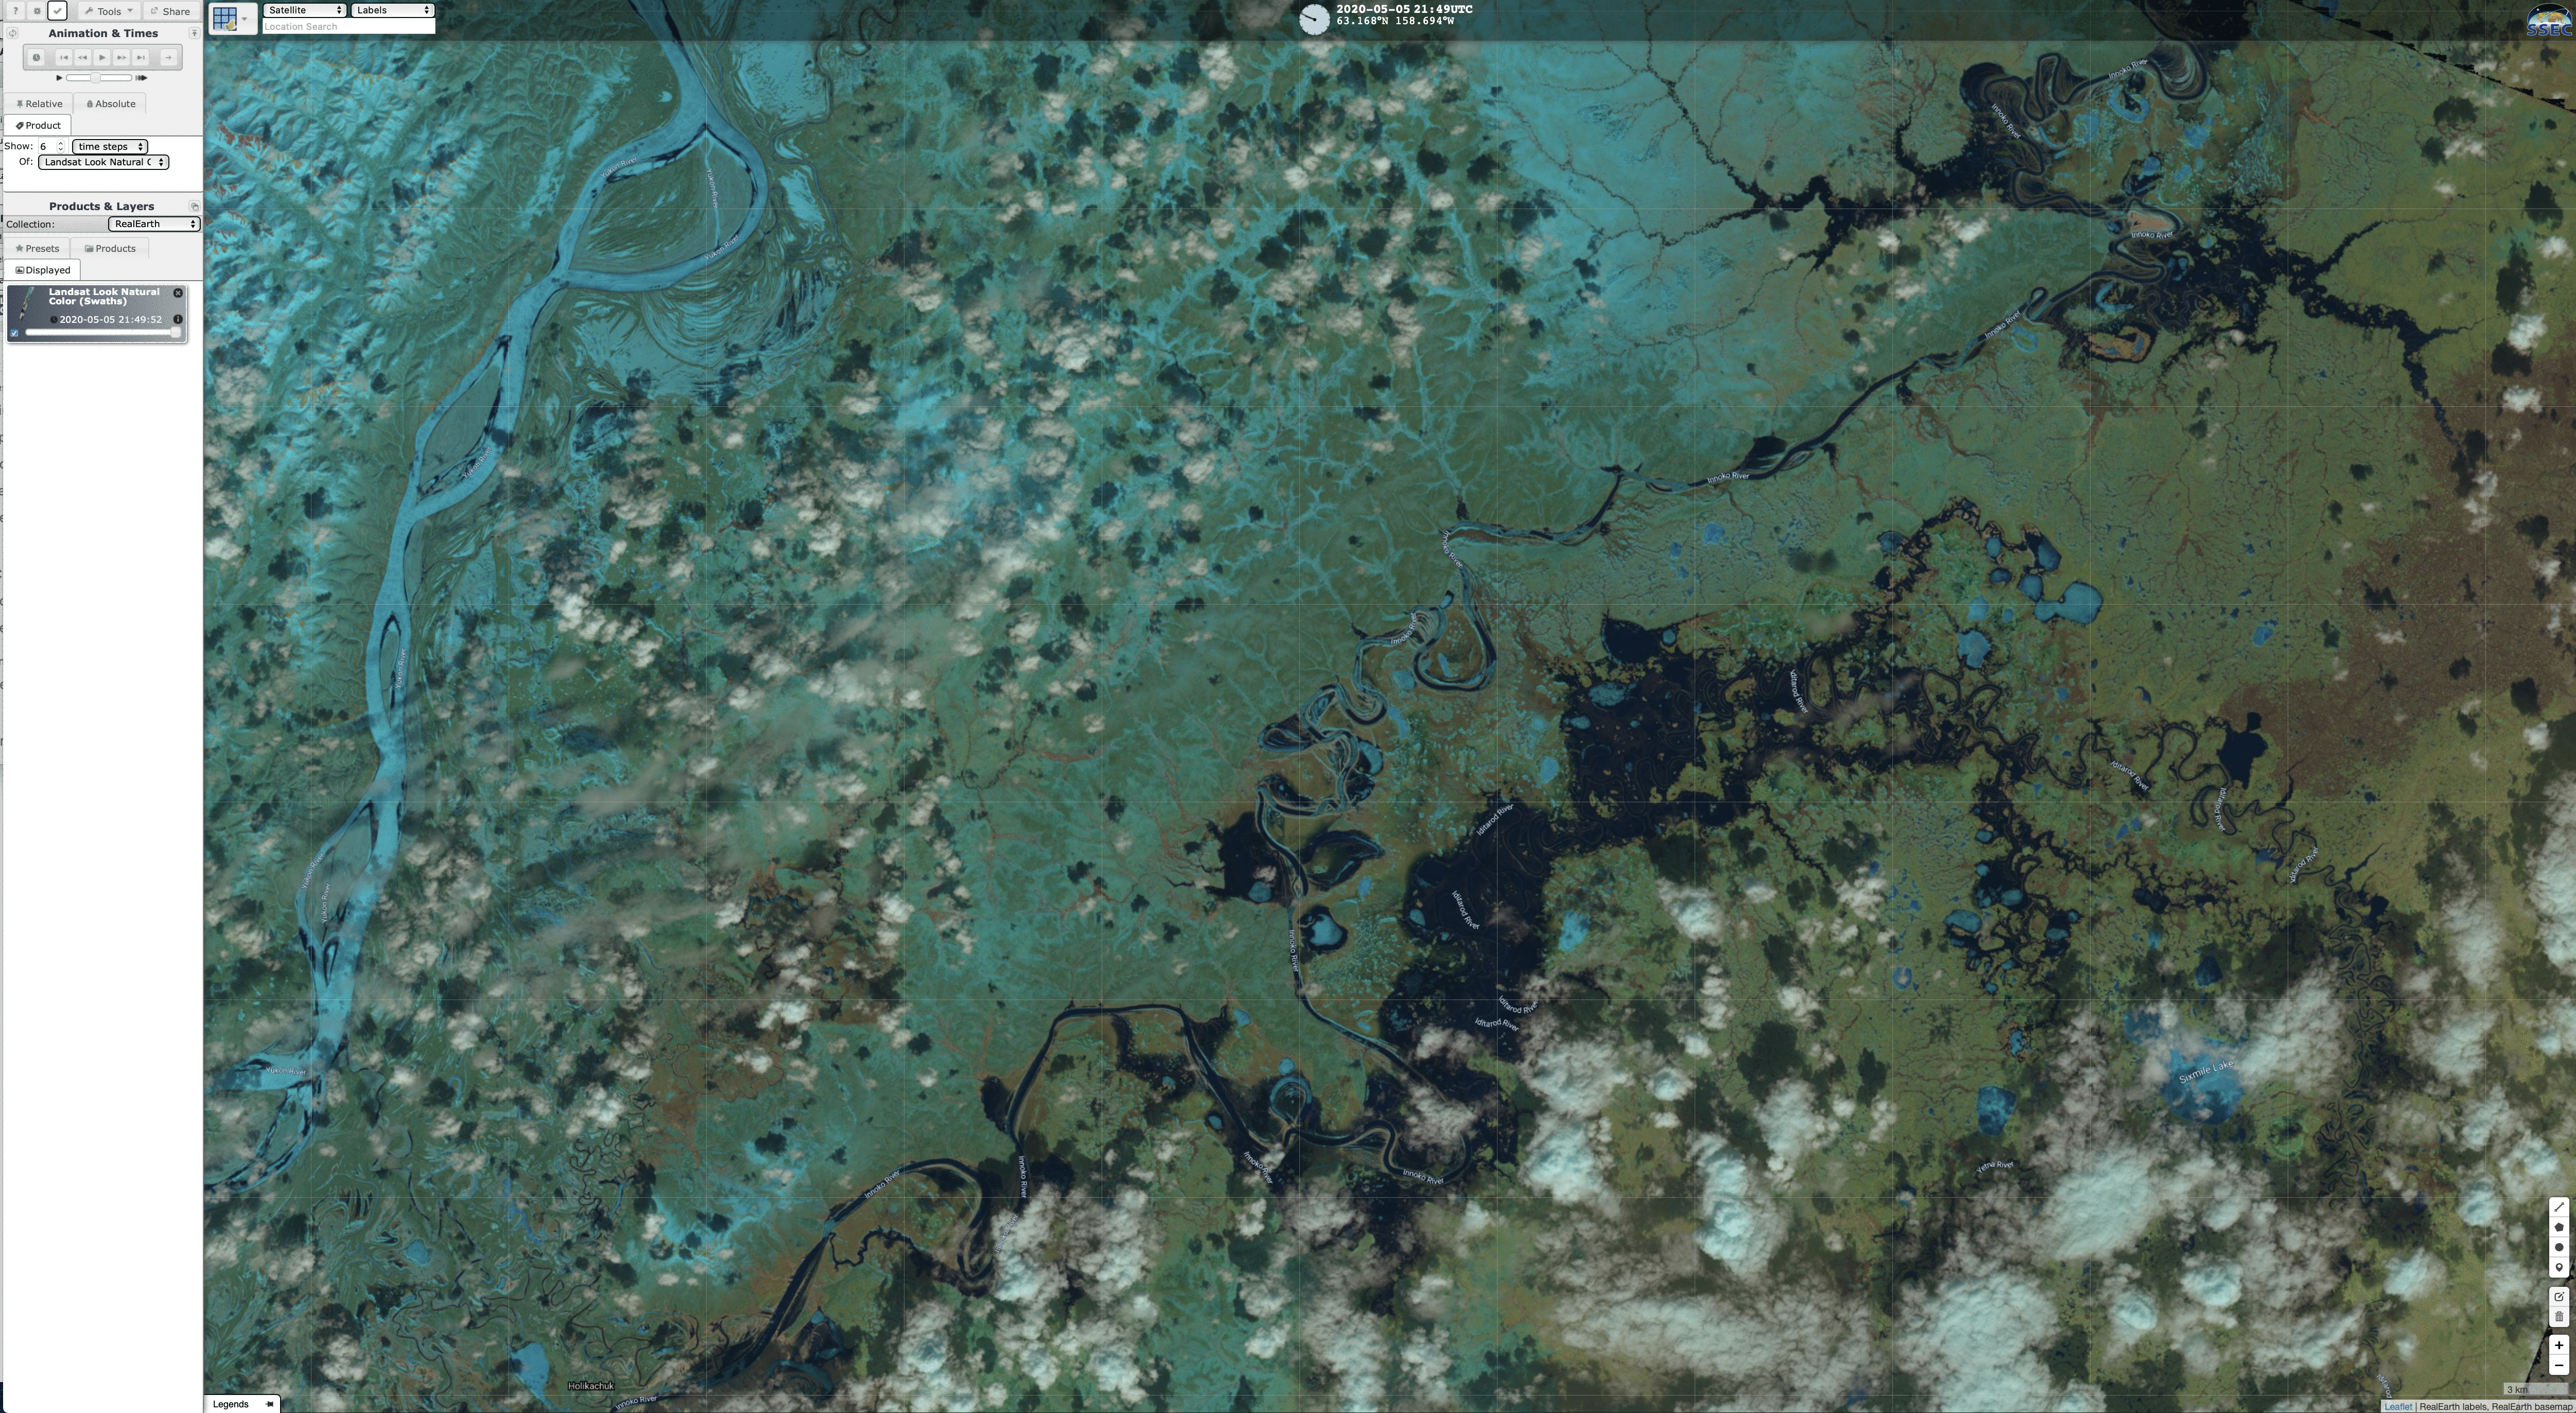 Landsat-8 False Color RGB mage + Google Maps background [click to enlarge]